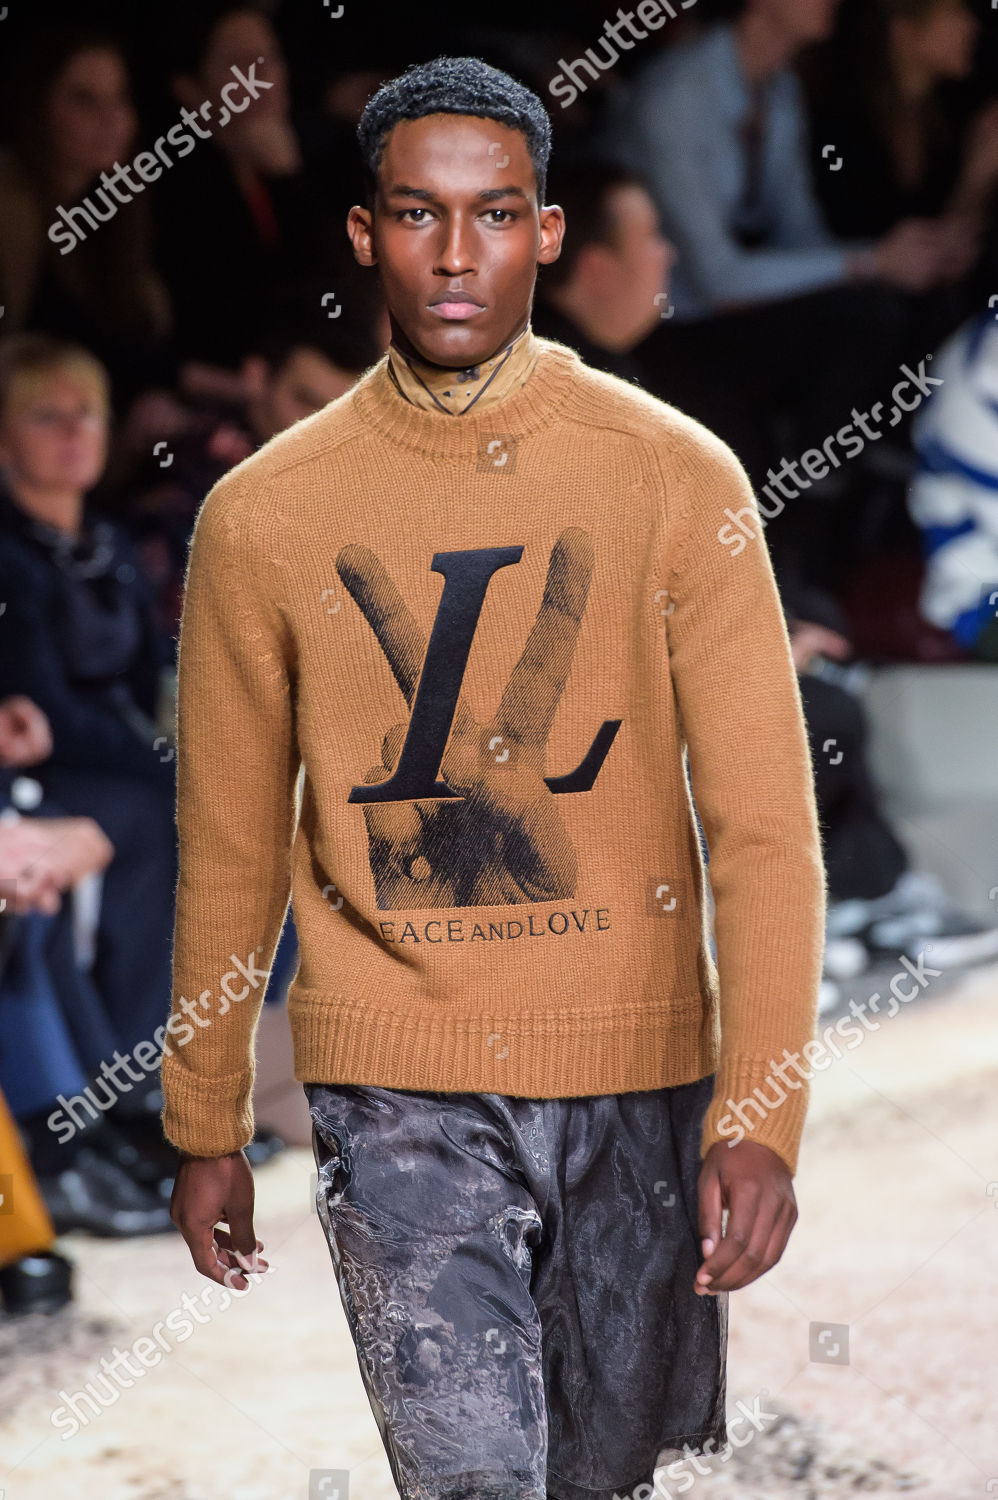 Louis Vuitton A/W 2019 Paris Fashion Week Men's